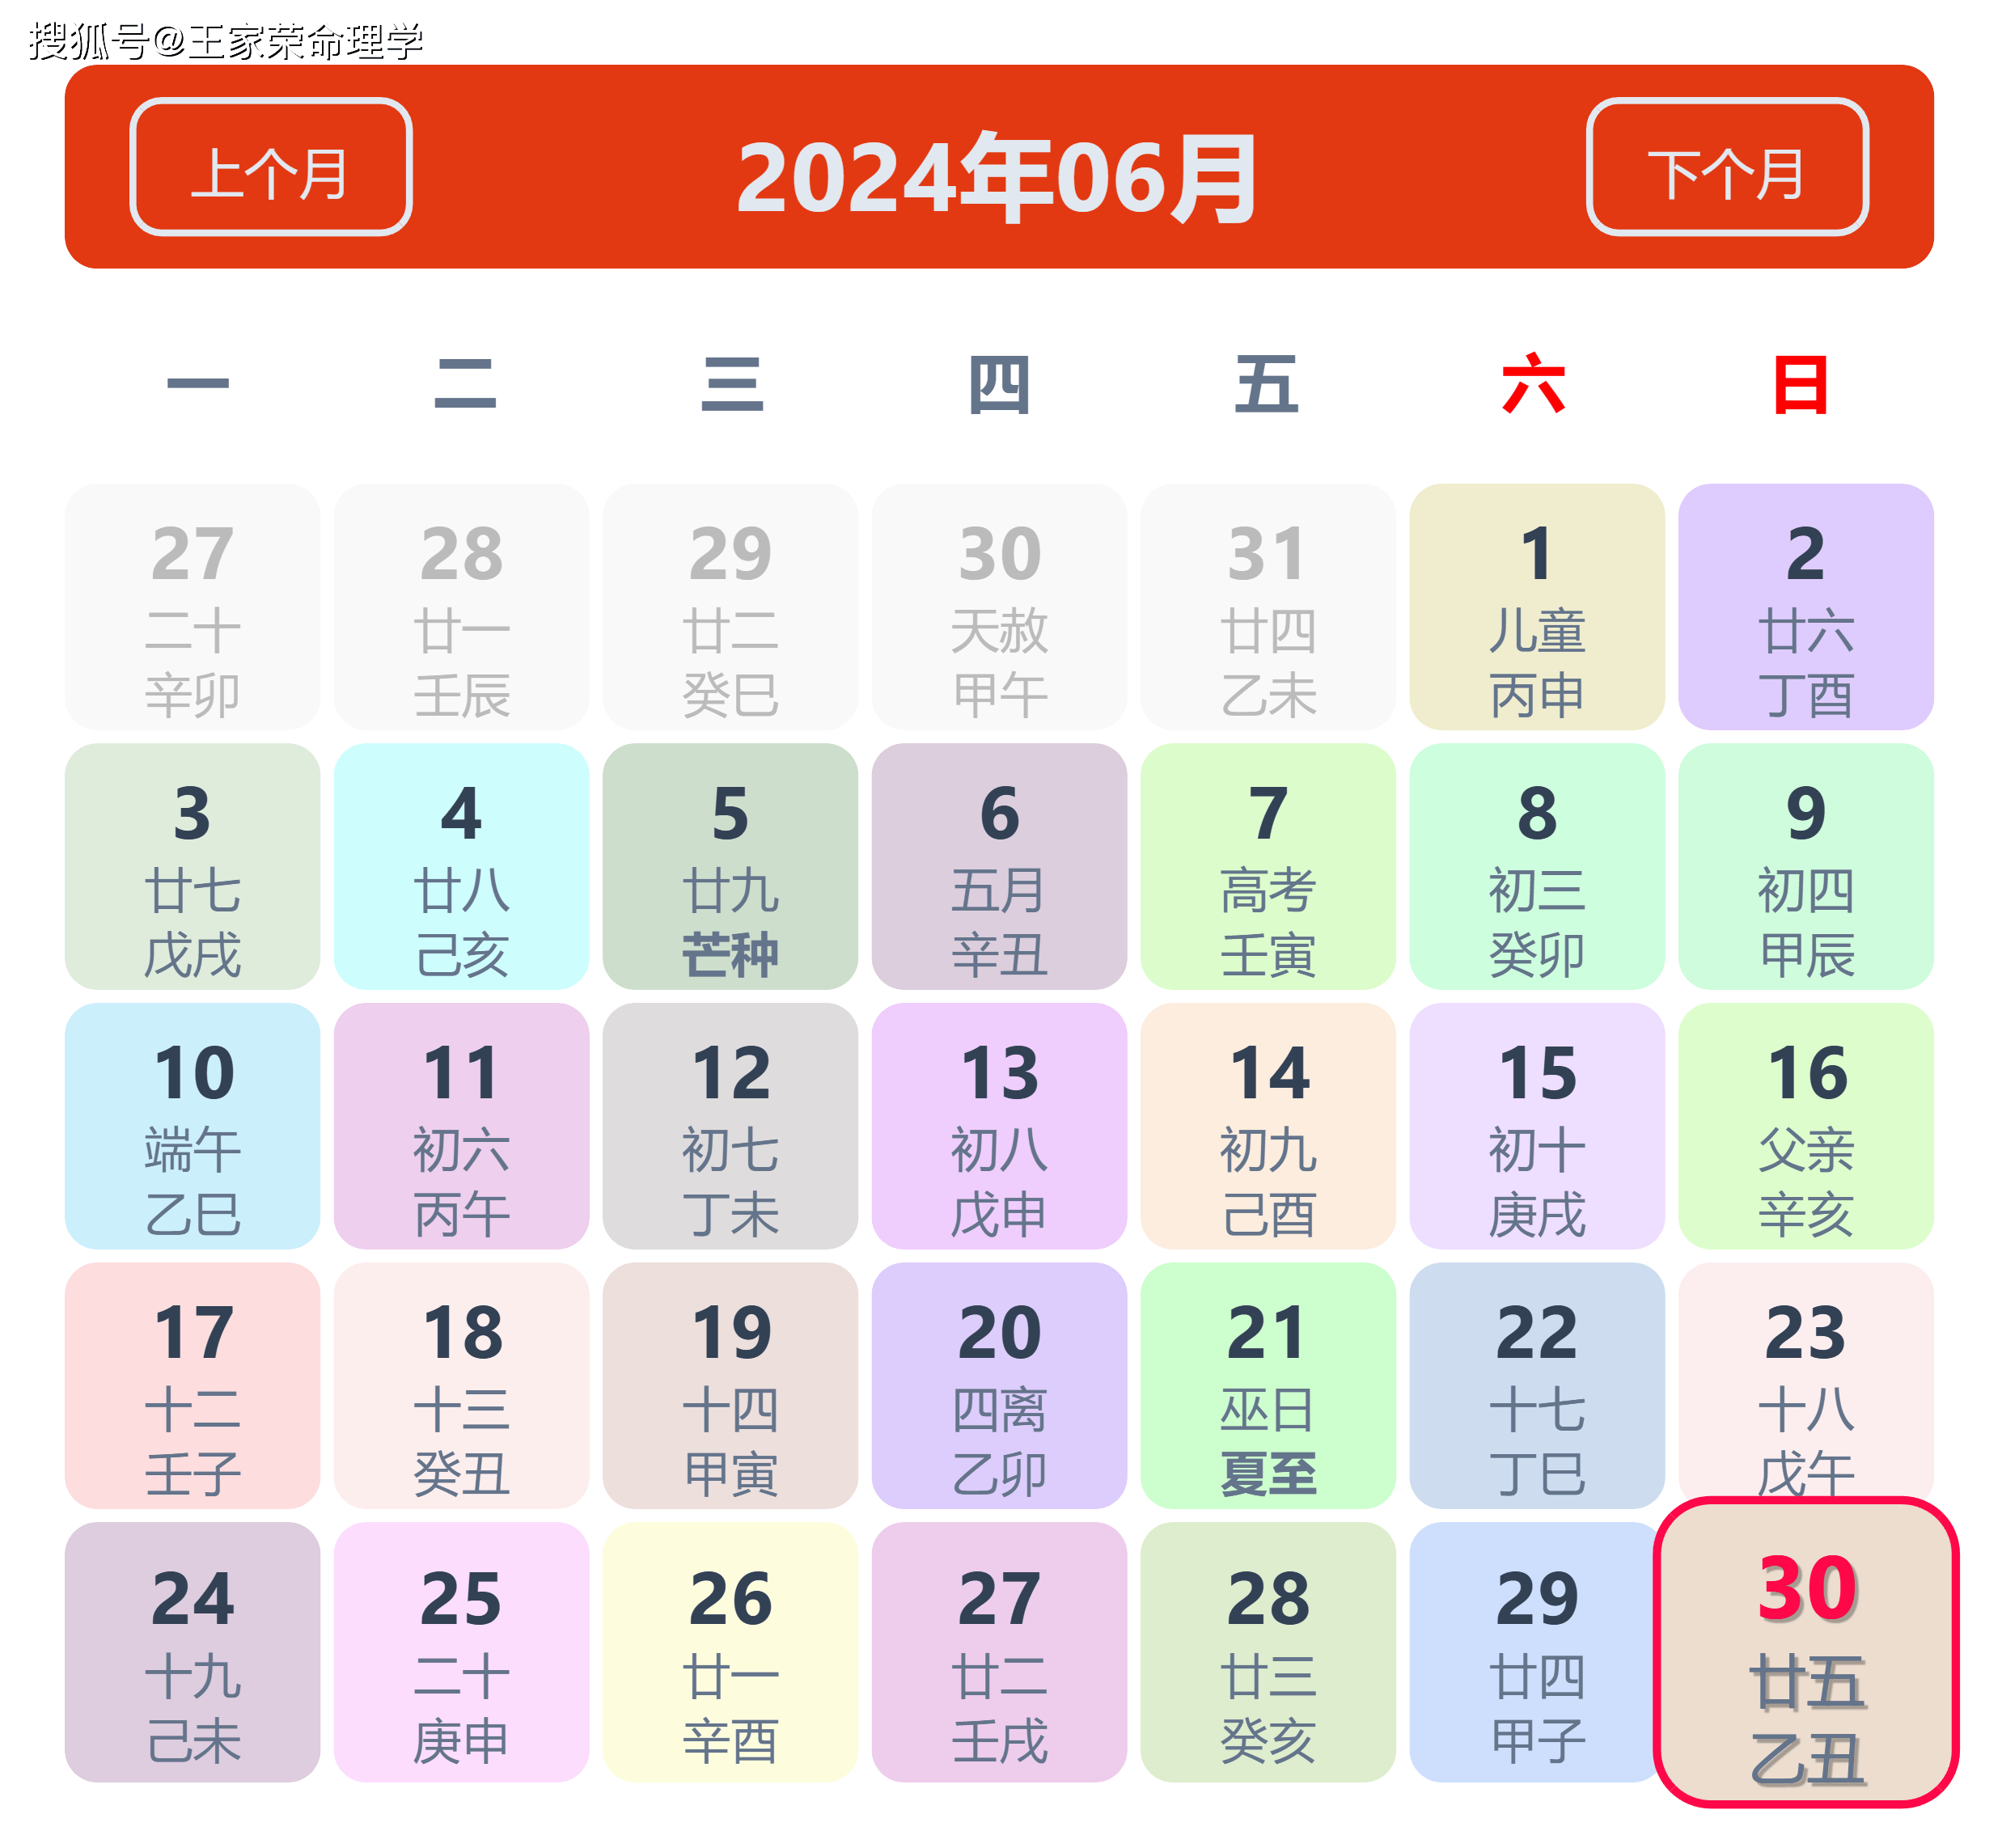 老黄历看日子生肖运势查询（2024年6月30日）